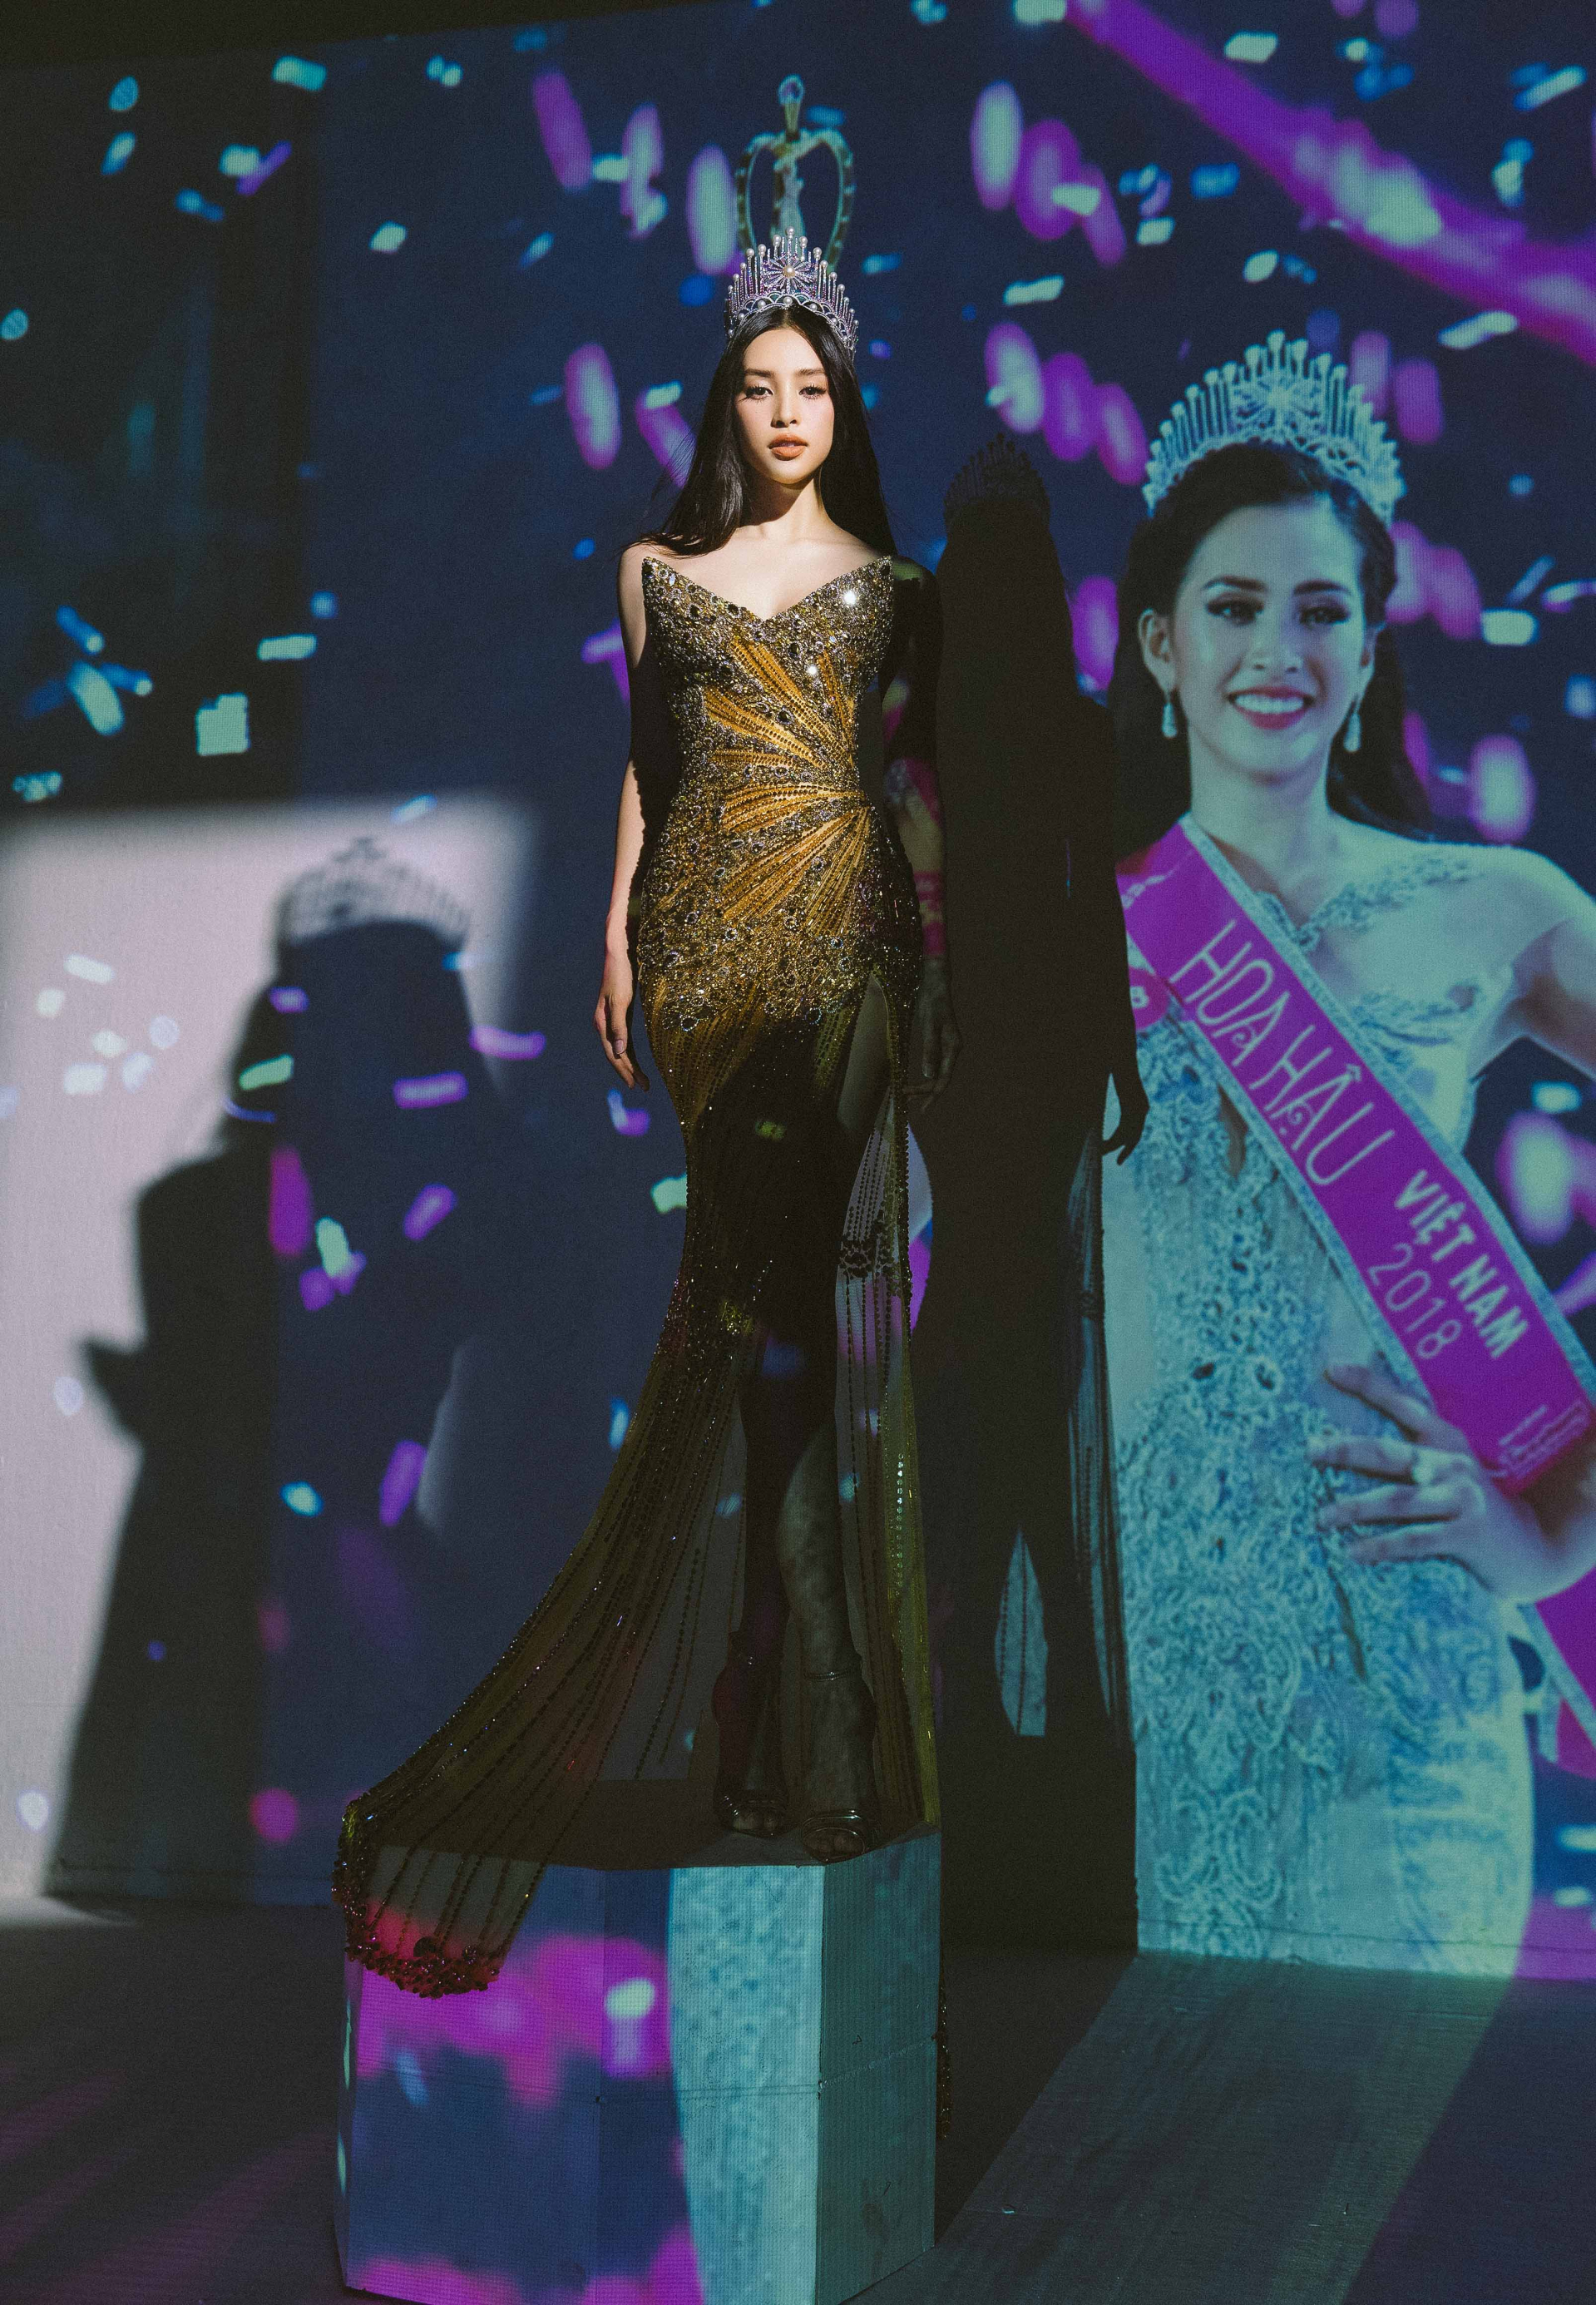 Trong một layout khác, nàng Hậu xuất hiện với chiếc váy tại đêm chung kết Miss World 2018 cùng với chiếc ghế đăng quang.